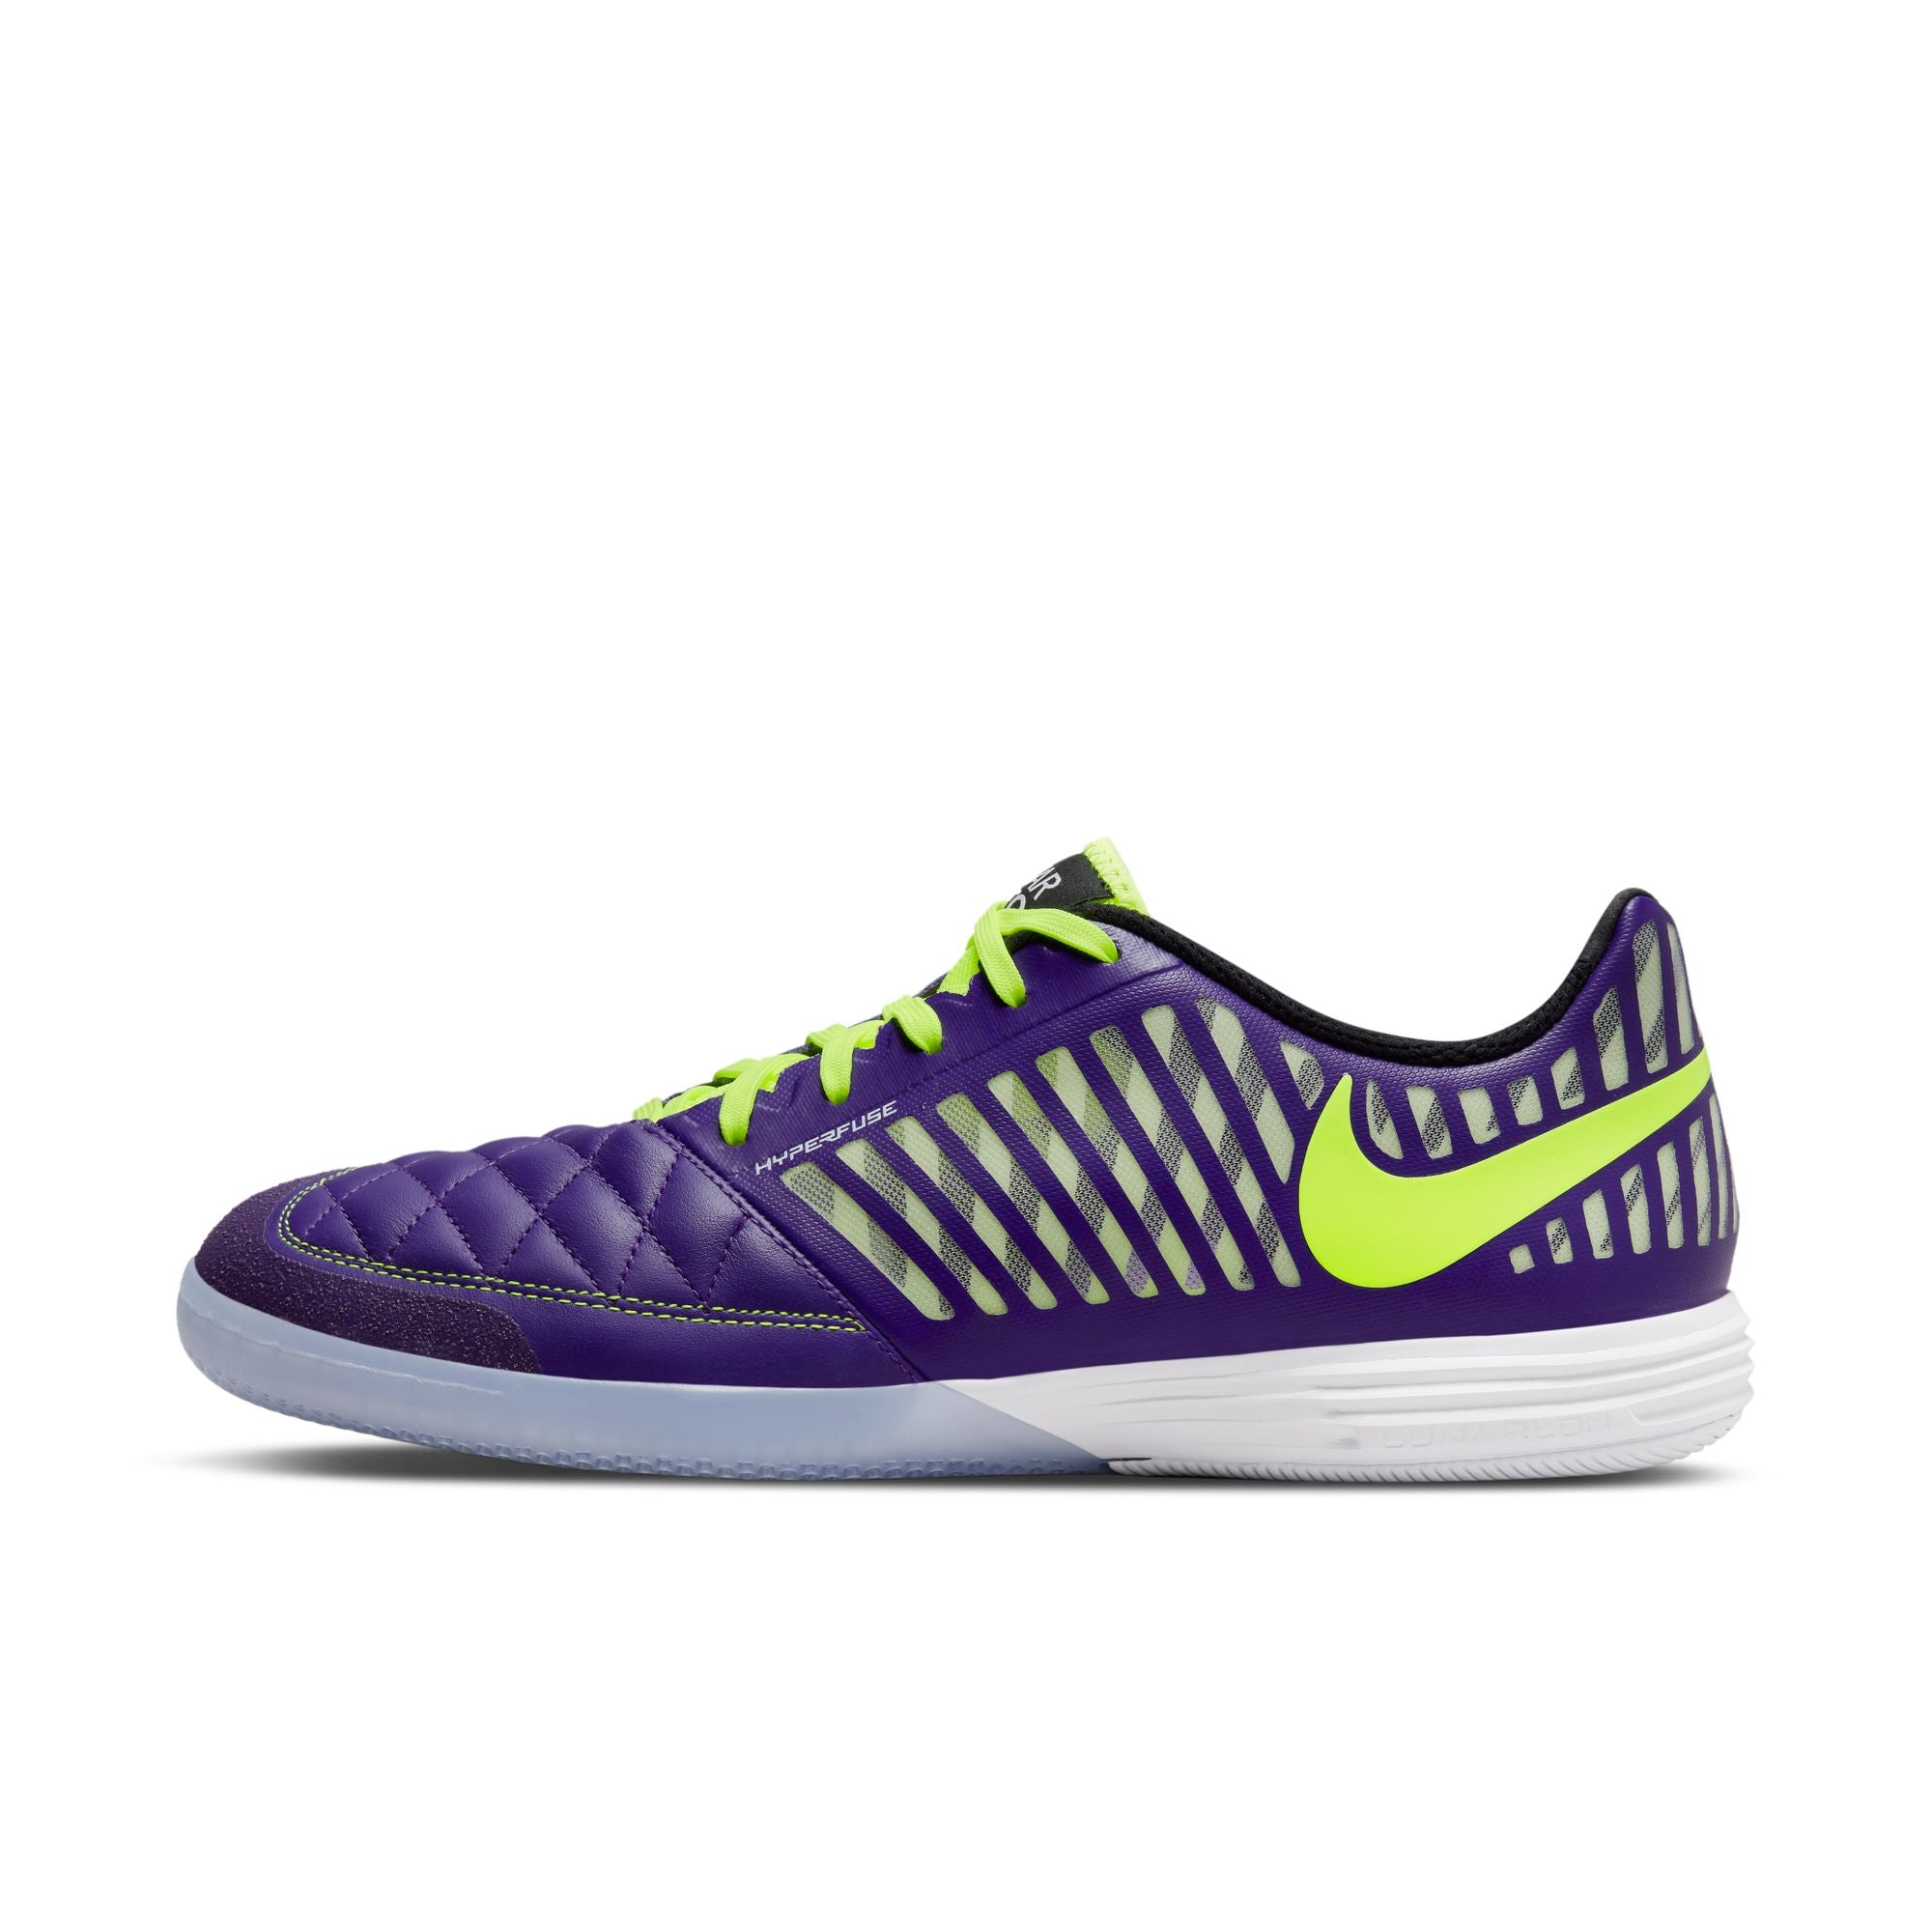 Nike II IC Soccer Shoes